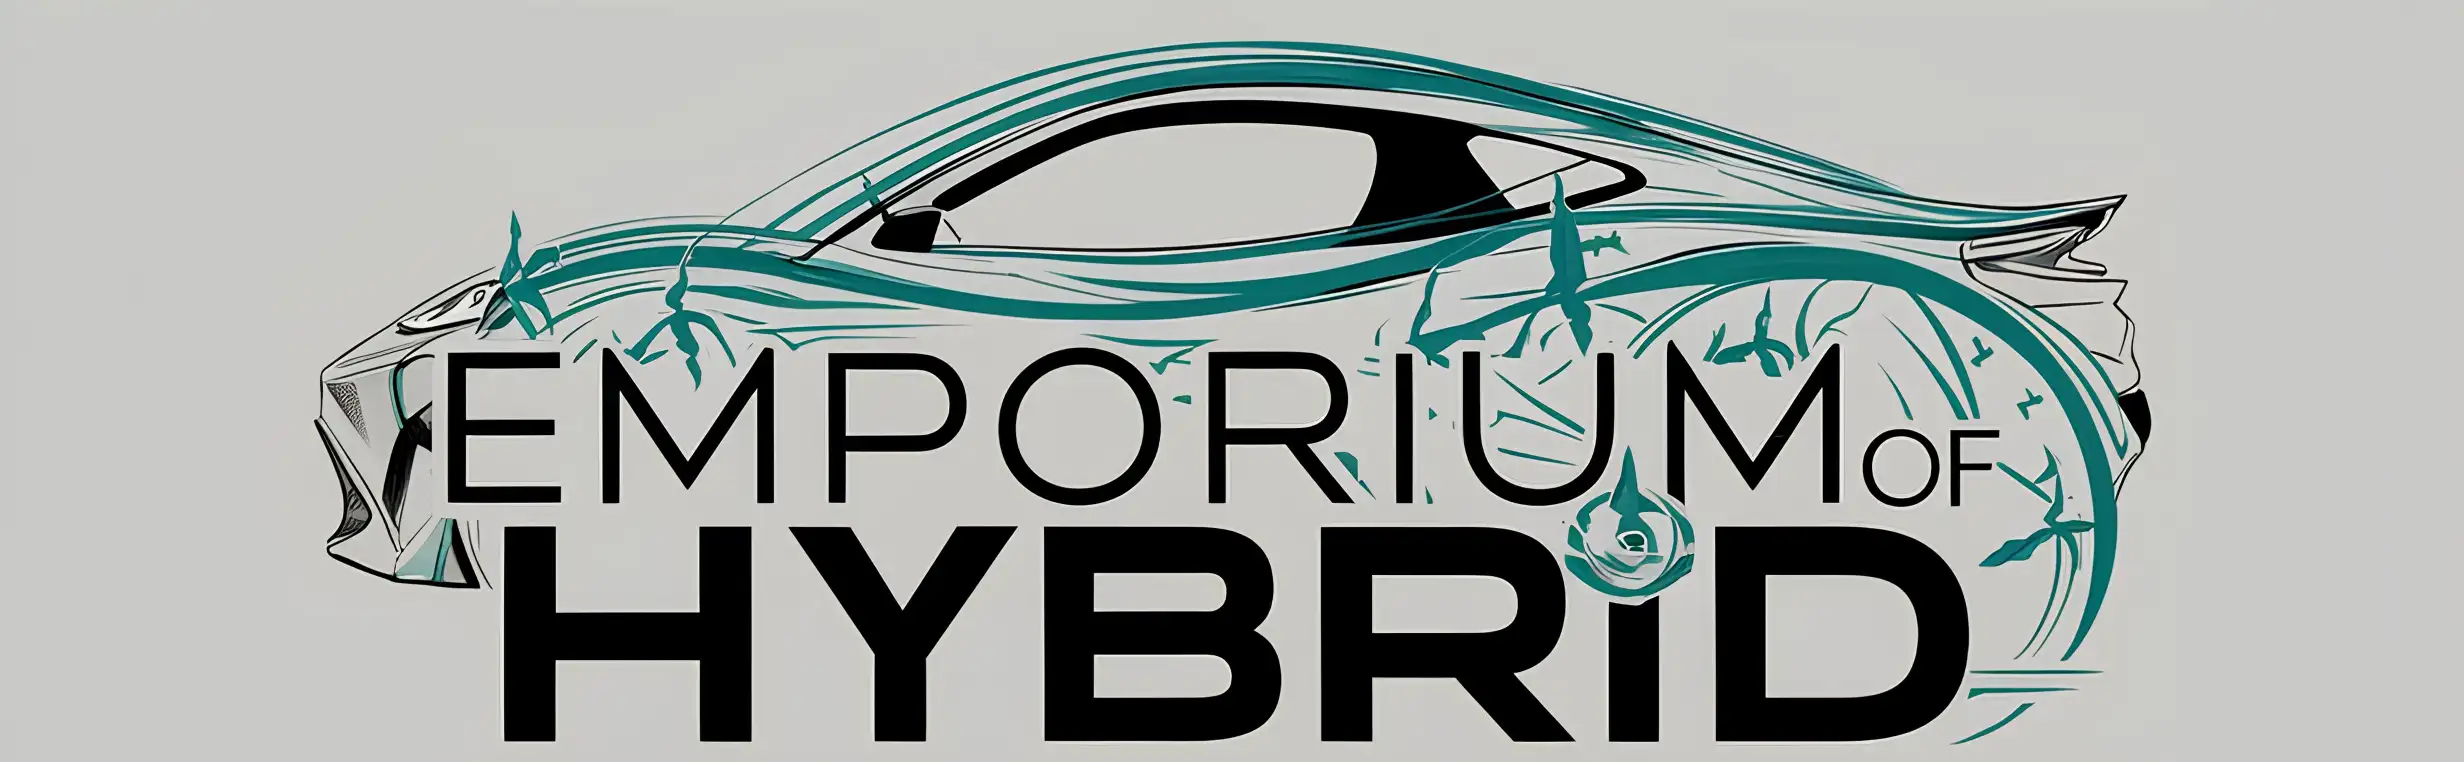 Emporium of Hybrid